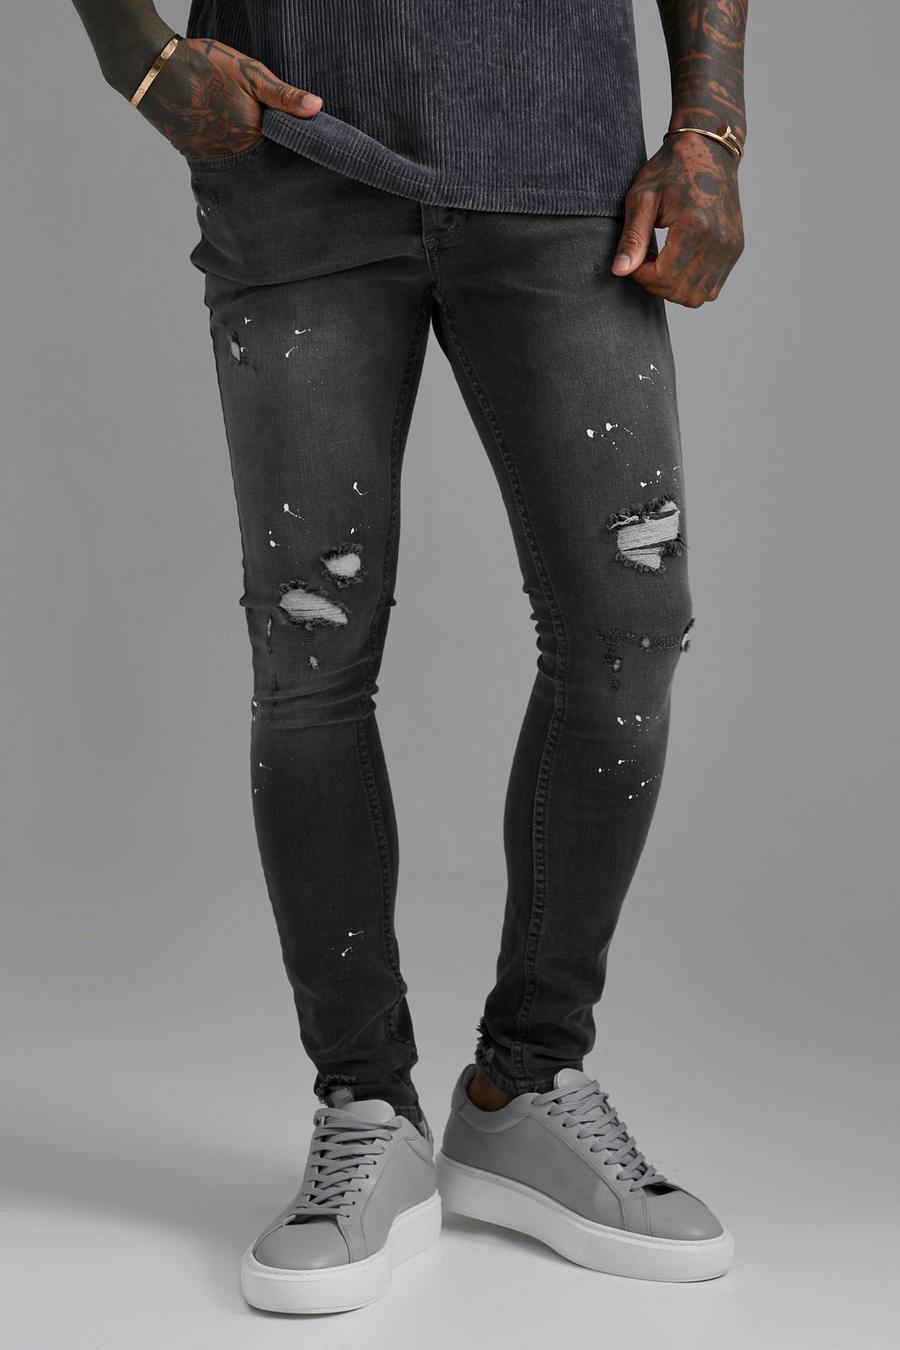 Jeans Super Skinny Fit strappati con schizzi di colore, Mid grey grigio